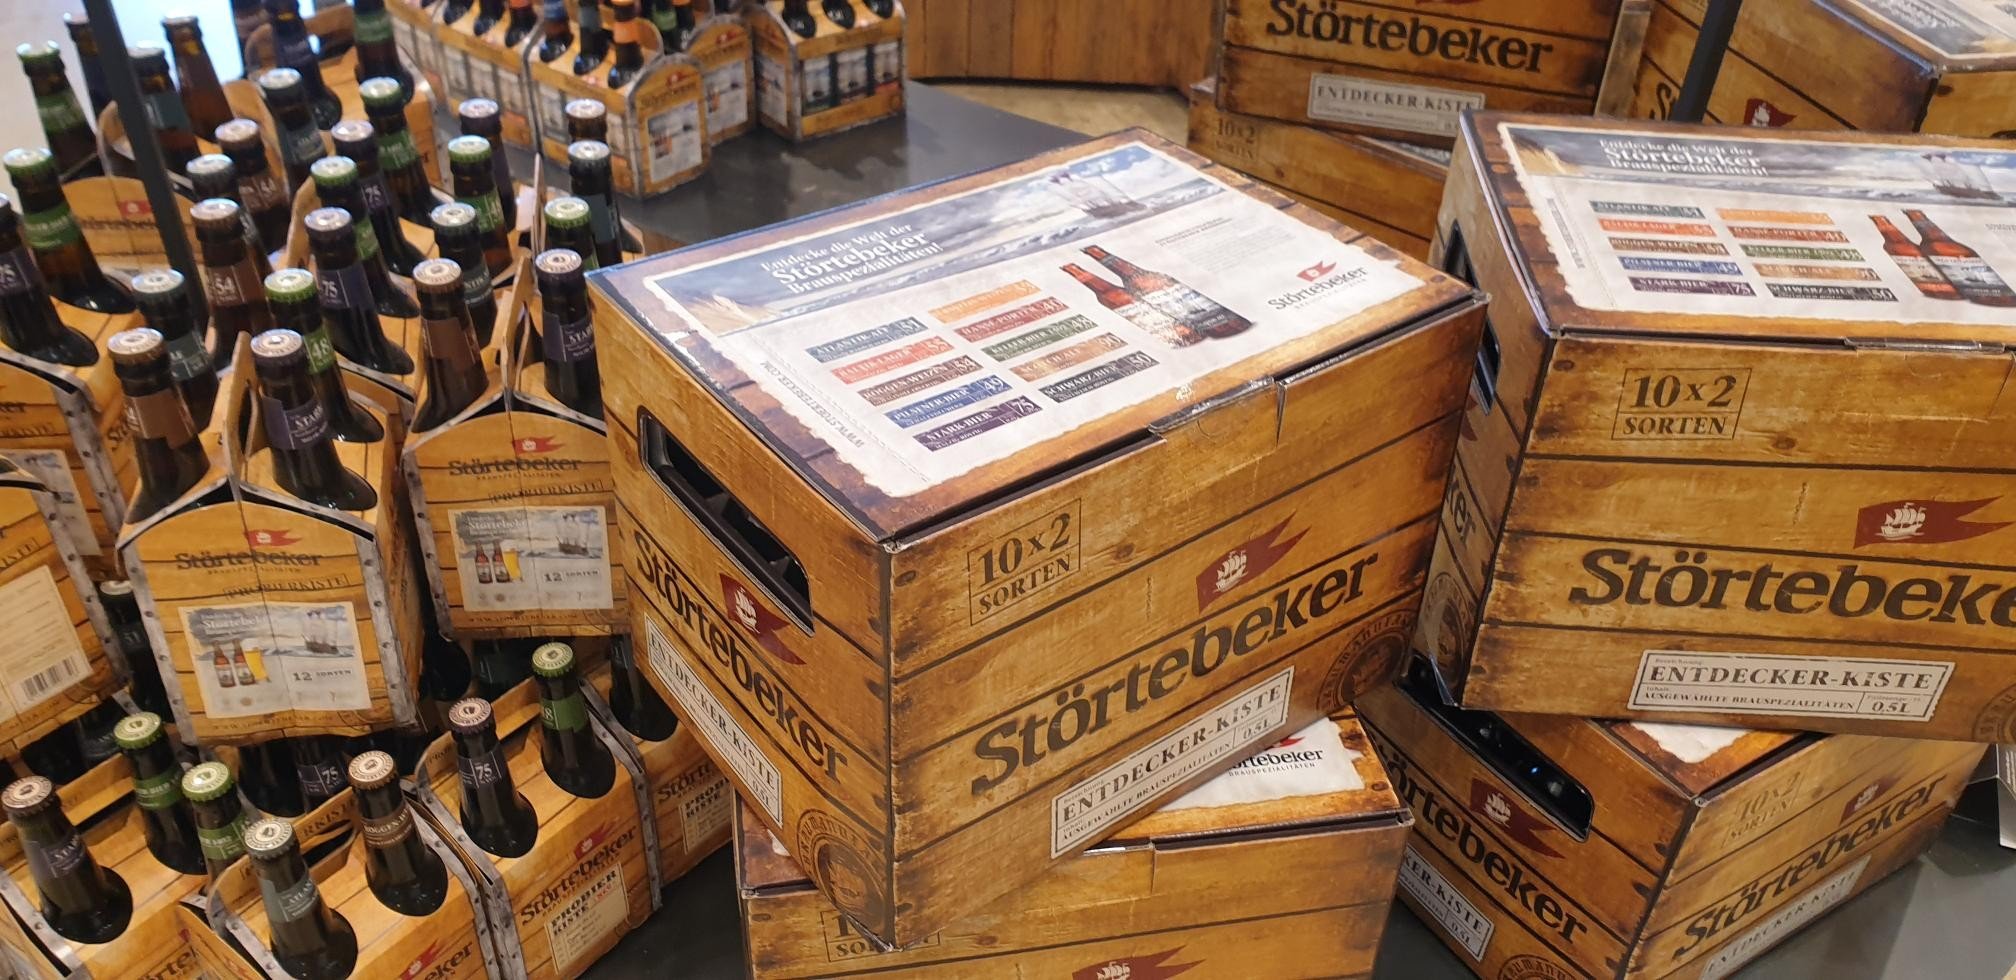 Störtebeker Brauspezialitäten Brauerei aus Deutschland